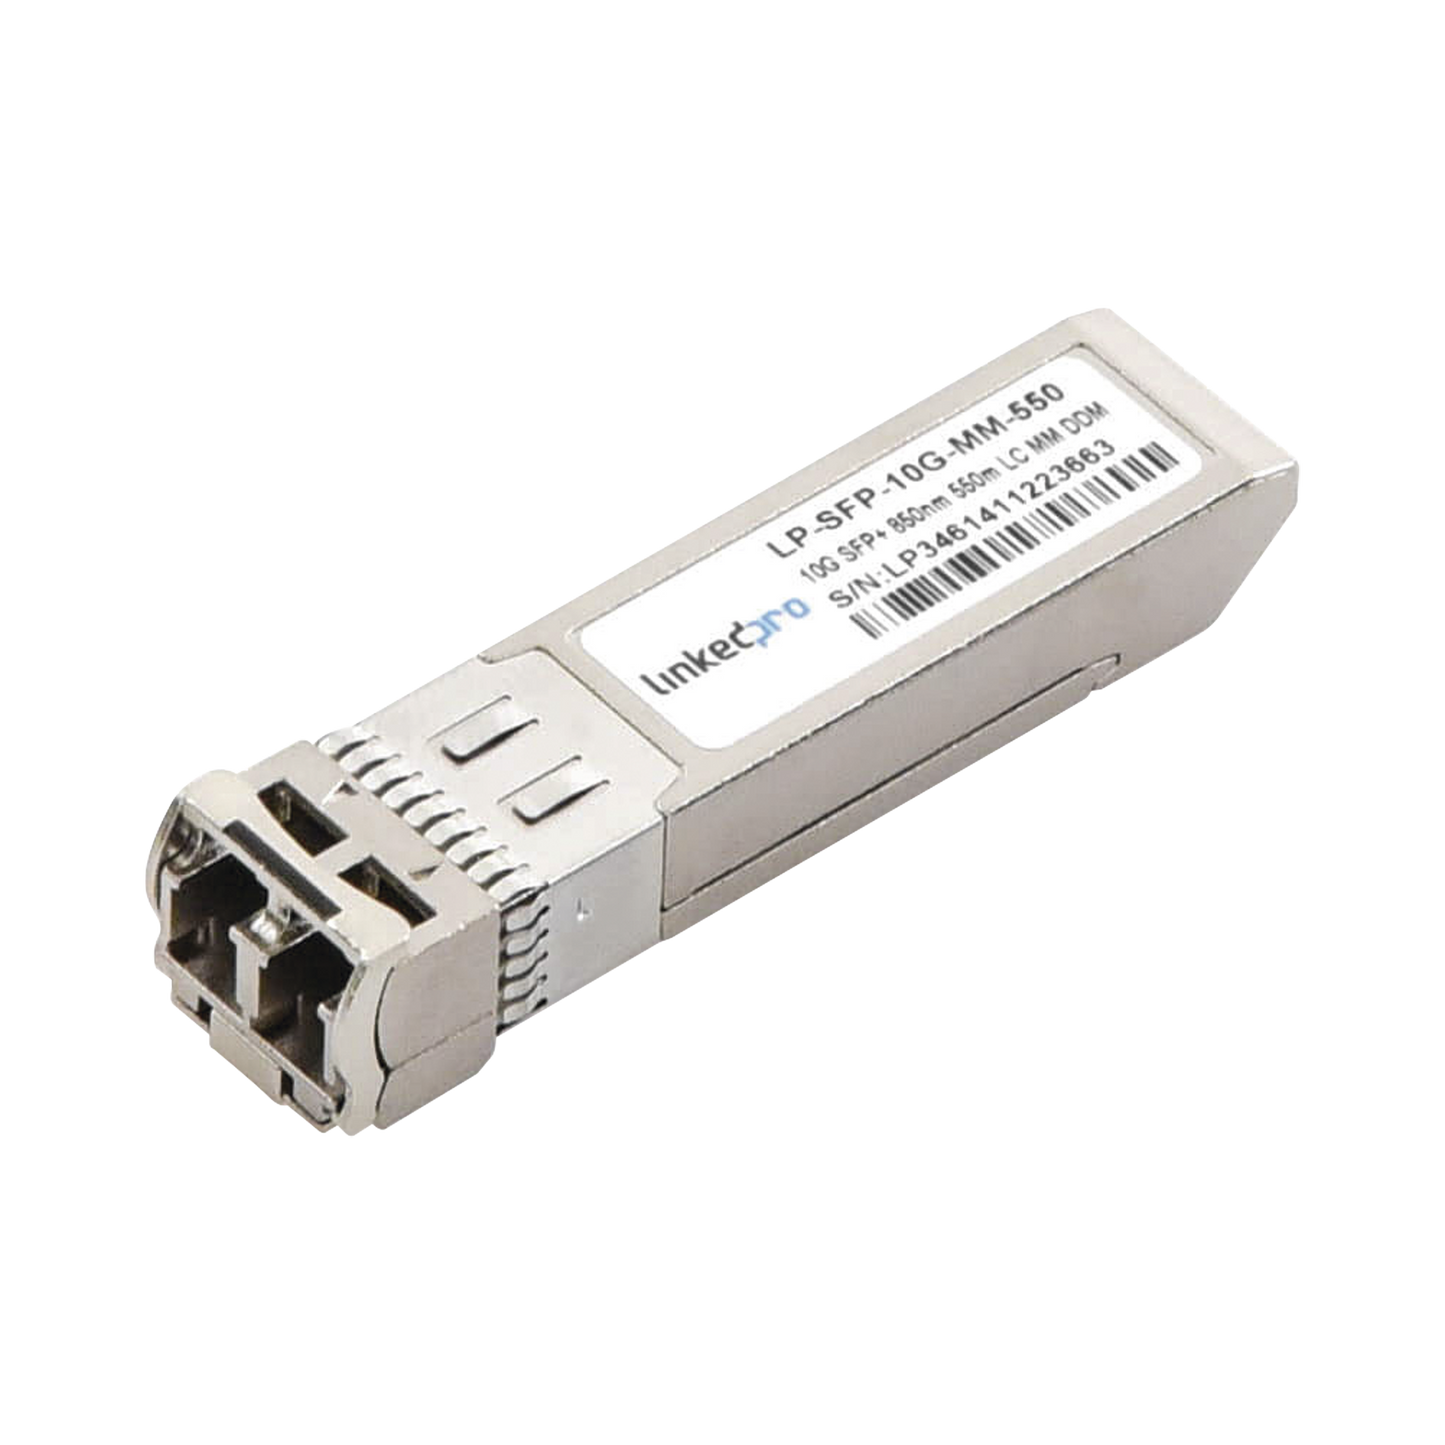 Transceptor SFP+ (Mini-Gbic) / Multimodo / 10 Gbps de velocidad / Conectores LC Dúplex / Hasta 550 m de Distancia